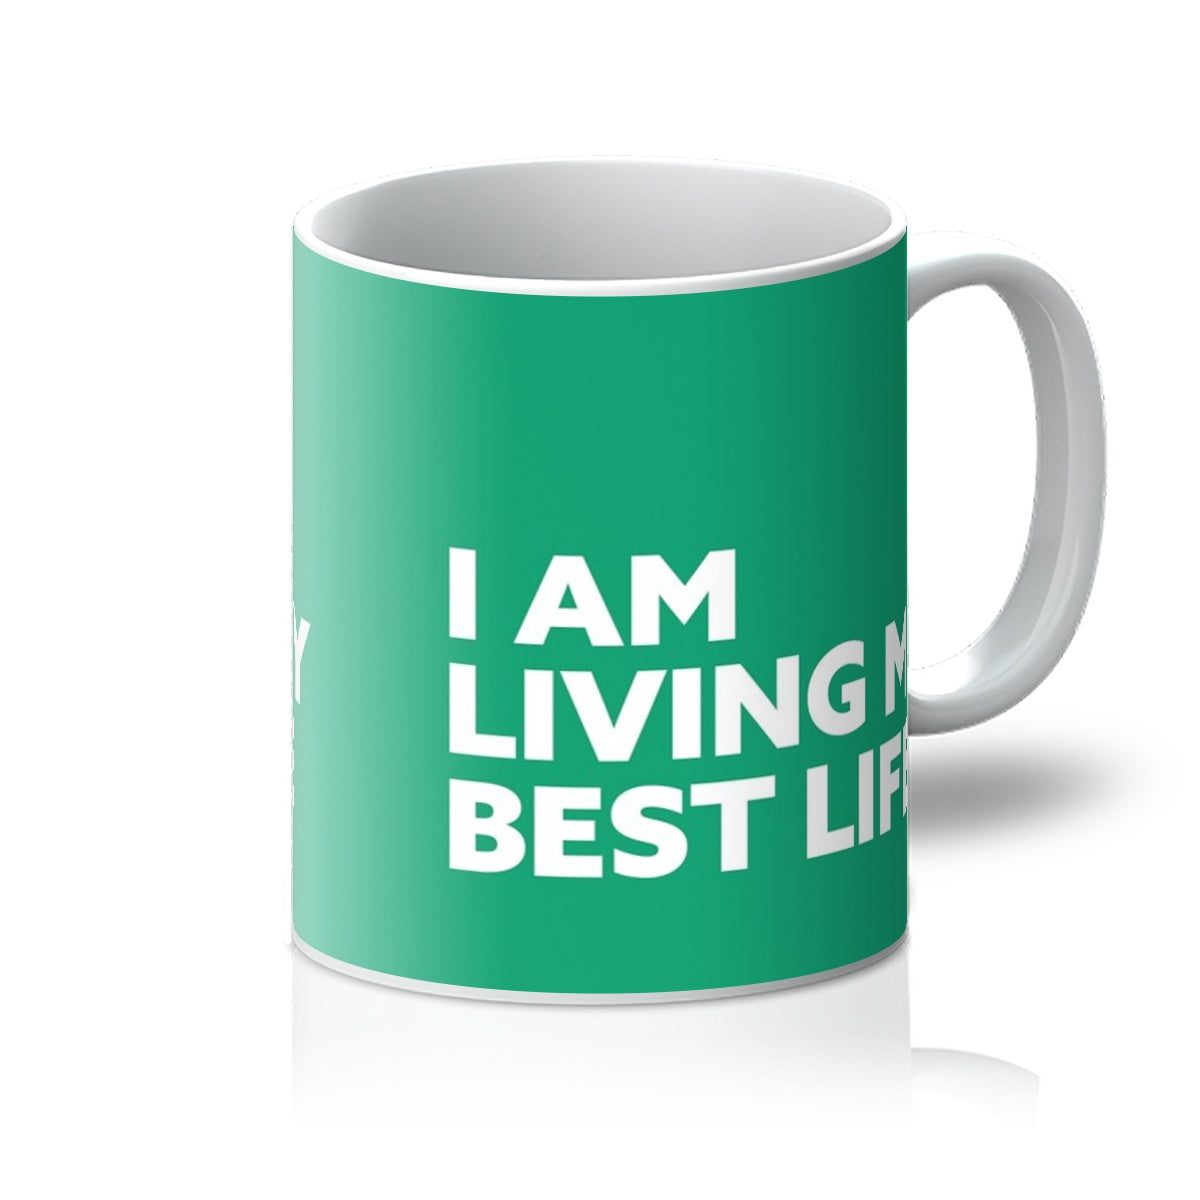 I AM Living My Best Life – Emerald Mug